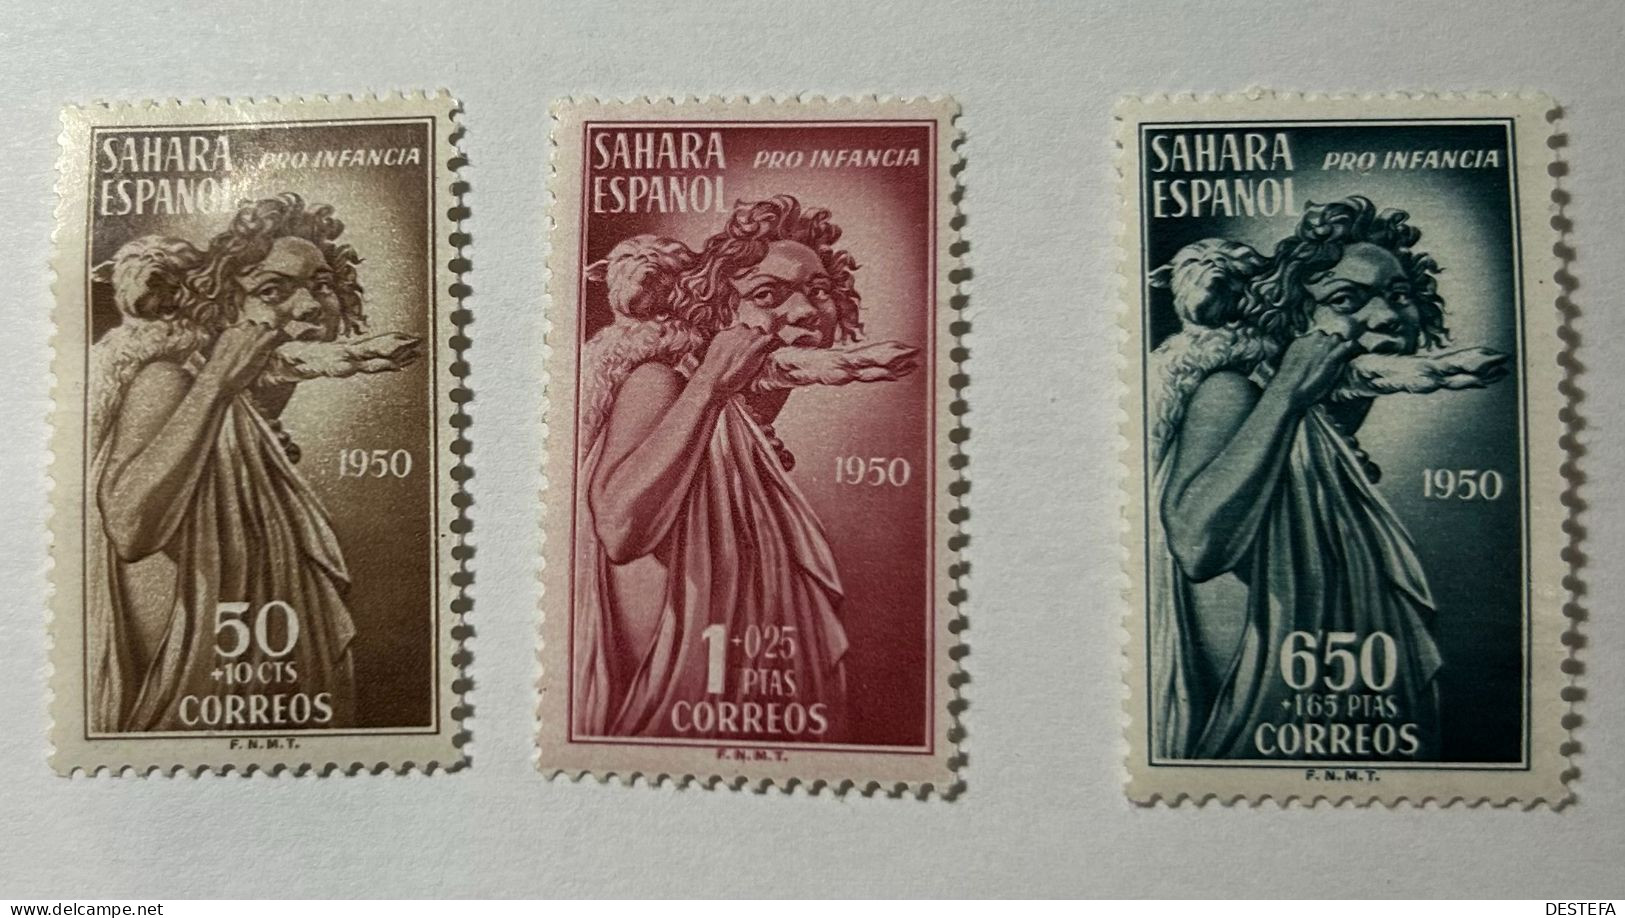 1950.- SAHARA. Pro Indígenas. Serie. Edifil Nº83/85. Nuevos Con Fijasellos * - Sahara Español